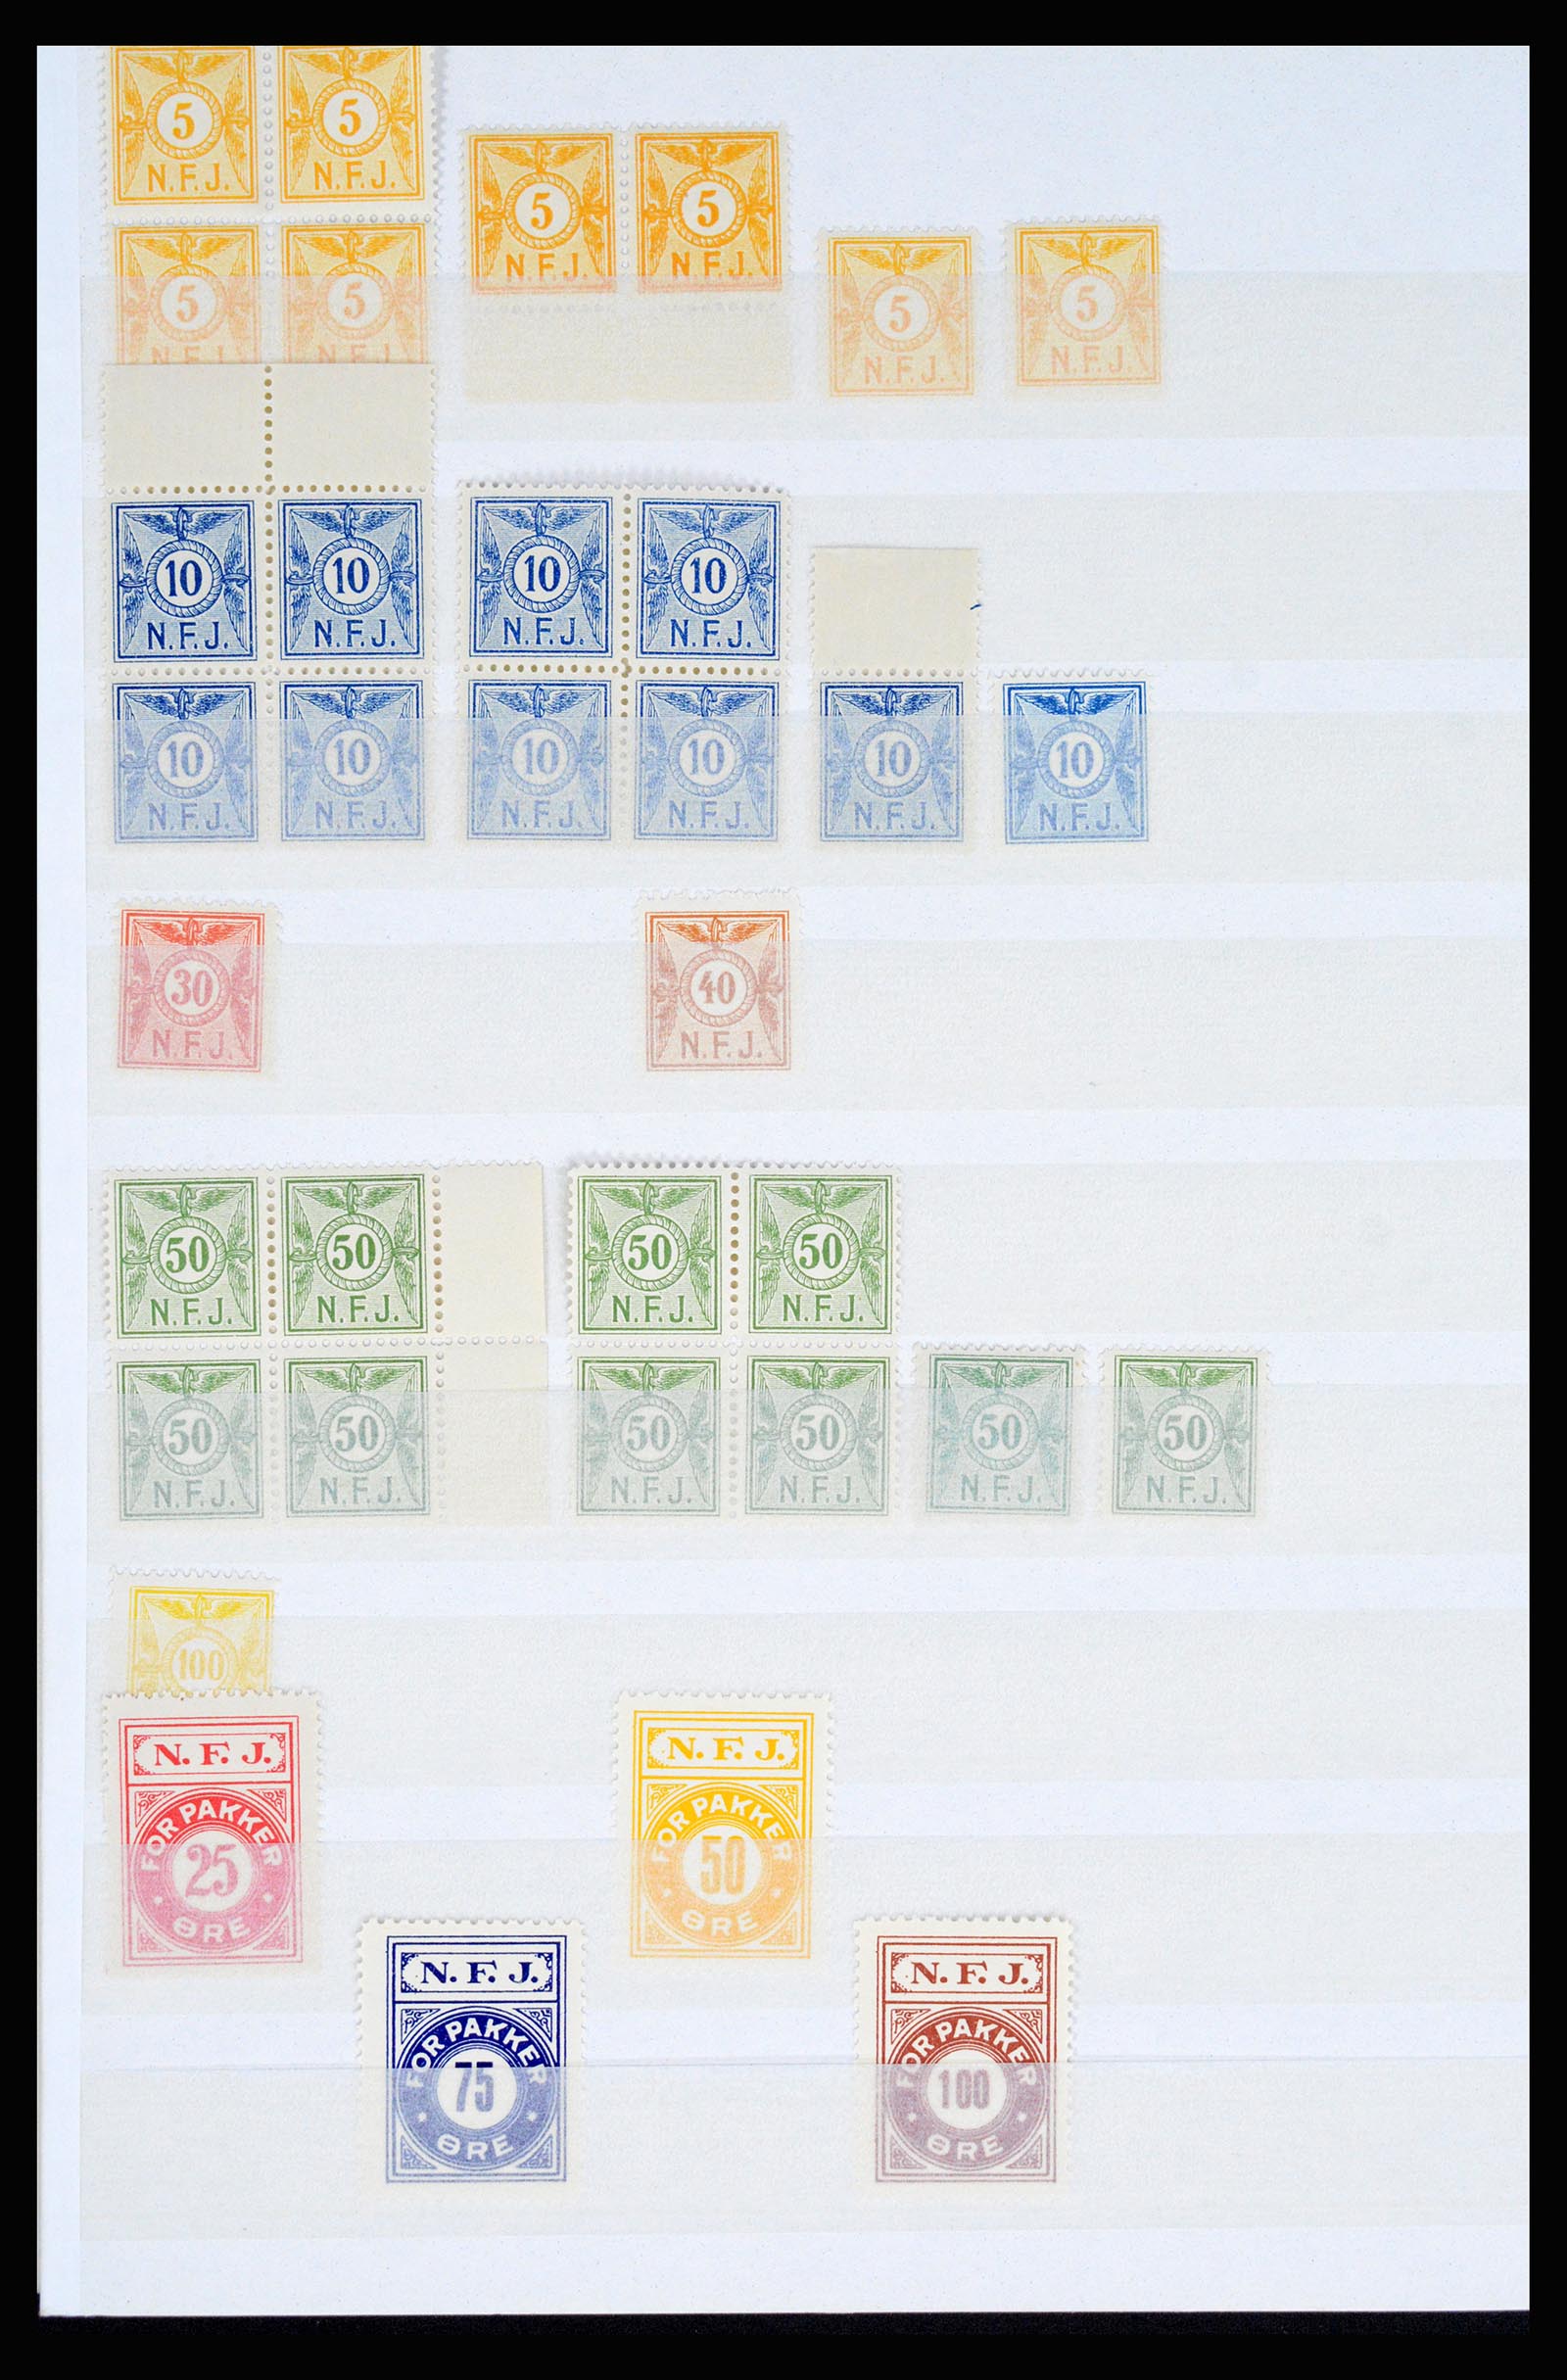 36982 105 - Postzegelverzameling 36982 Denemarken spoorwegzegels.